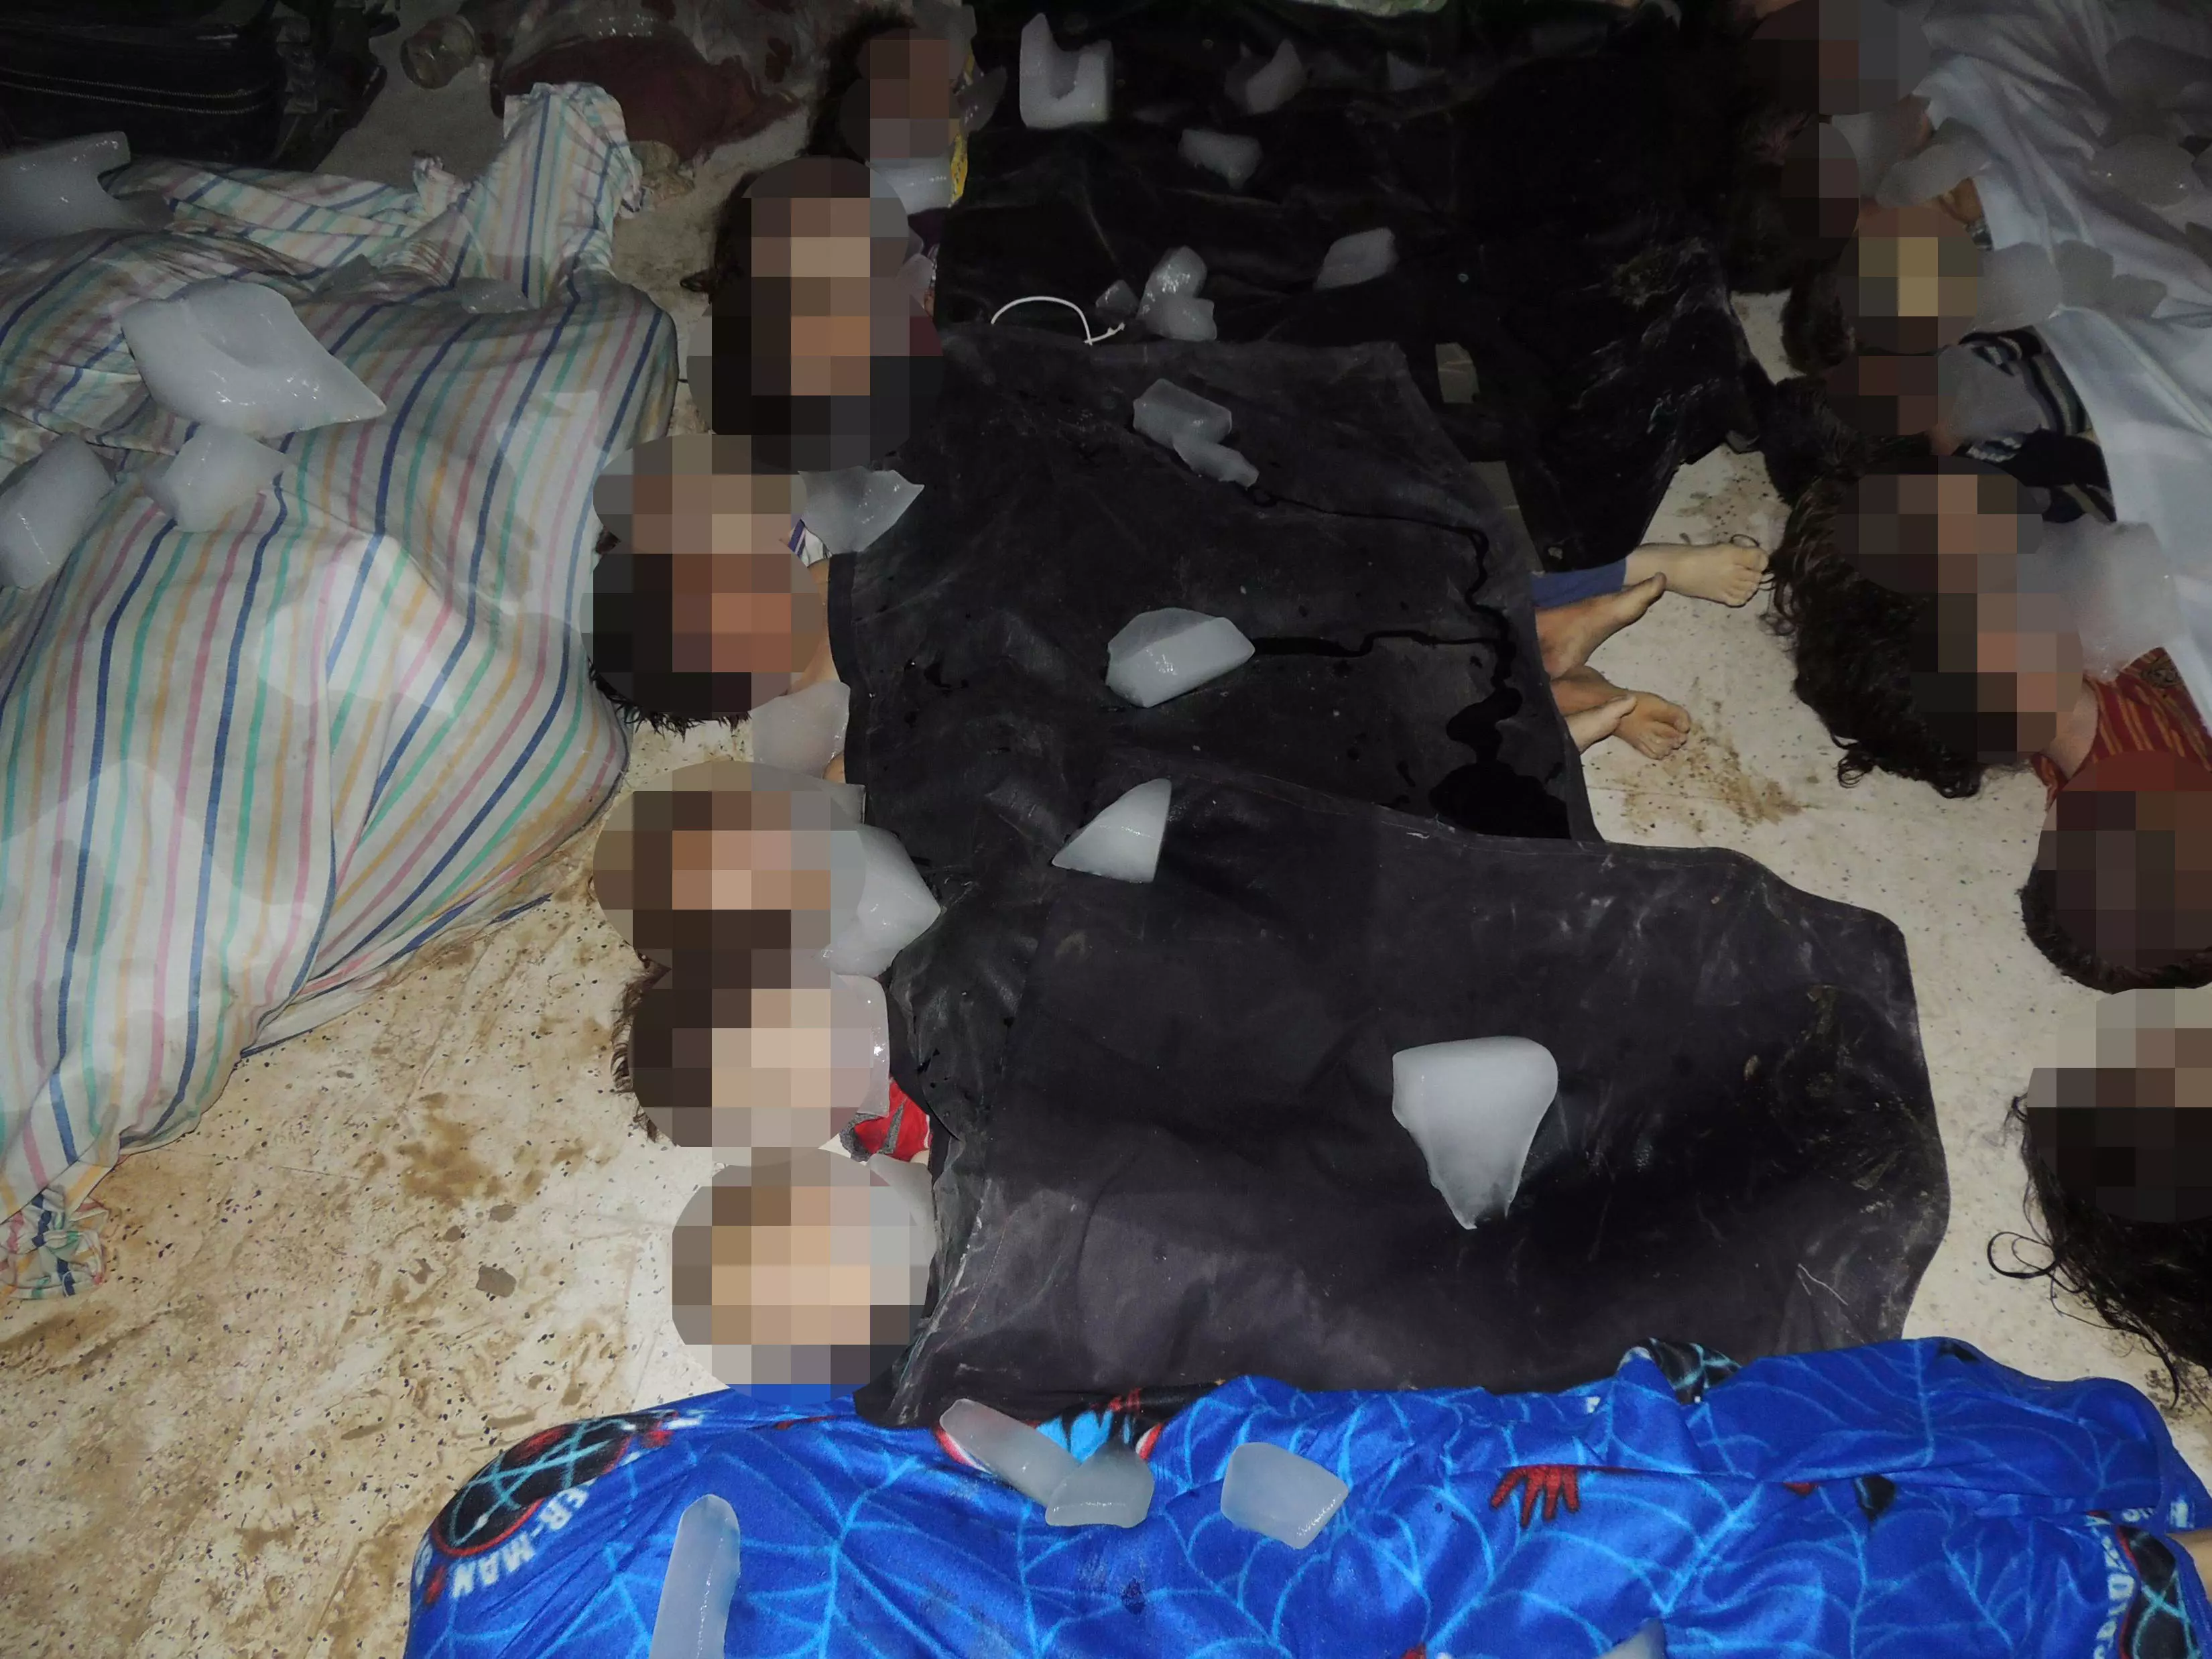 גופות של ילדים שנהרגו לכאורה במתקפה הכימית, אוגוסט 2013